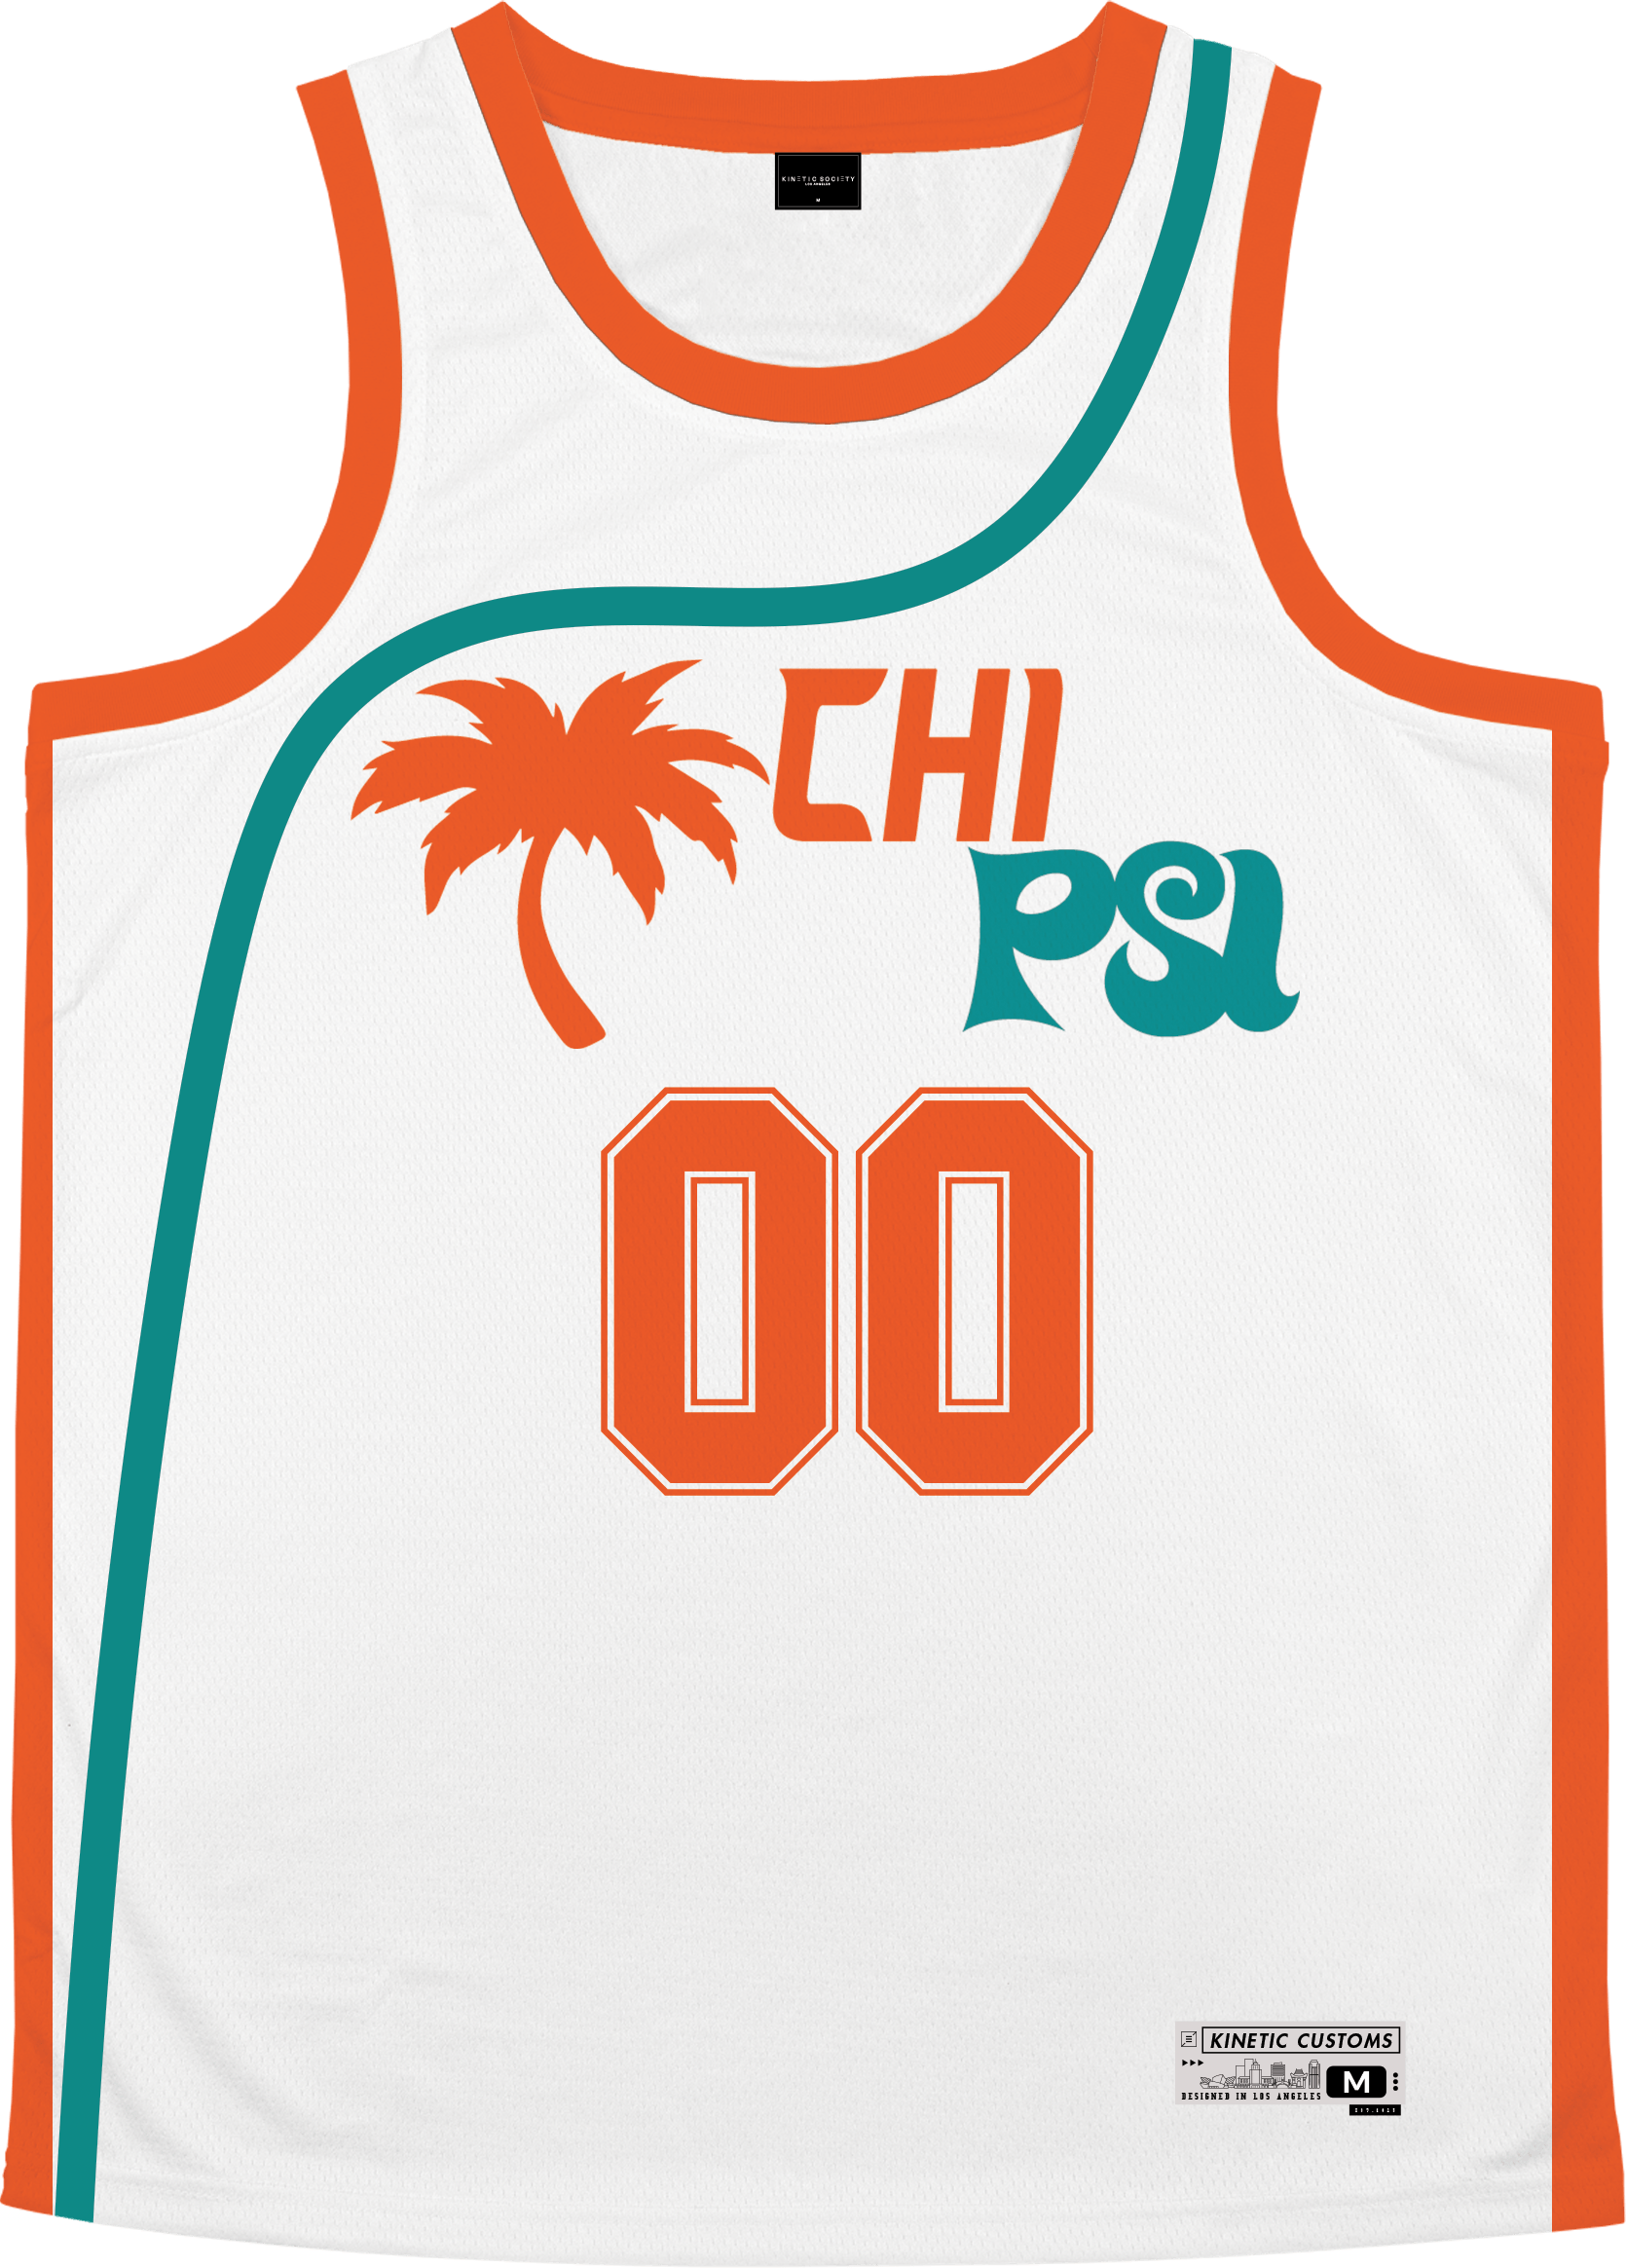 Chi Psi - Tropical Basketball Jersey Premium Basketball Kinetic Society LLC 